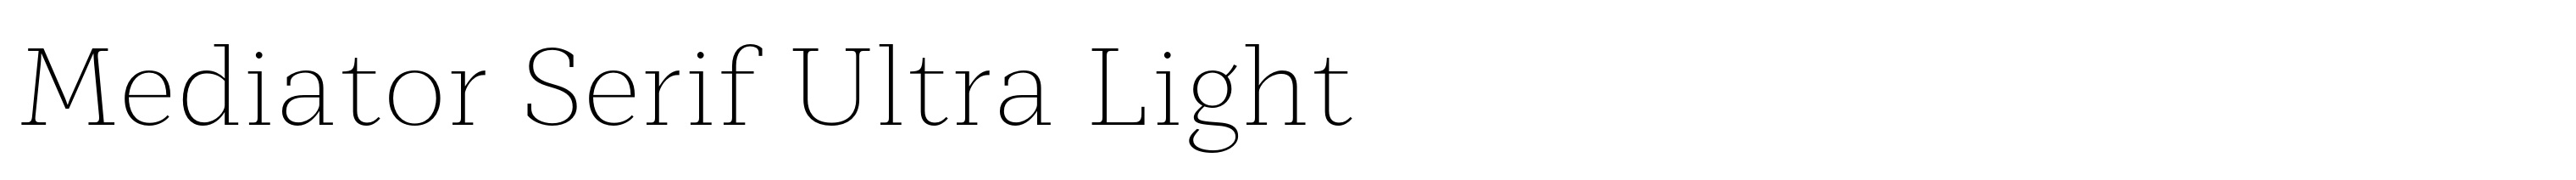 Mediator Serif Ultra Light